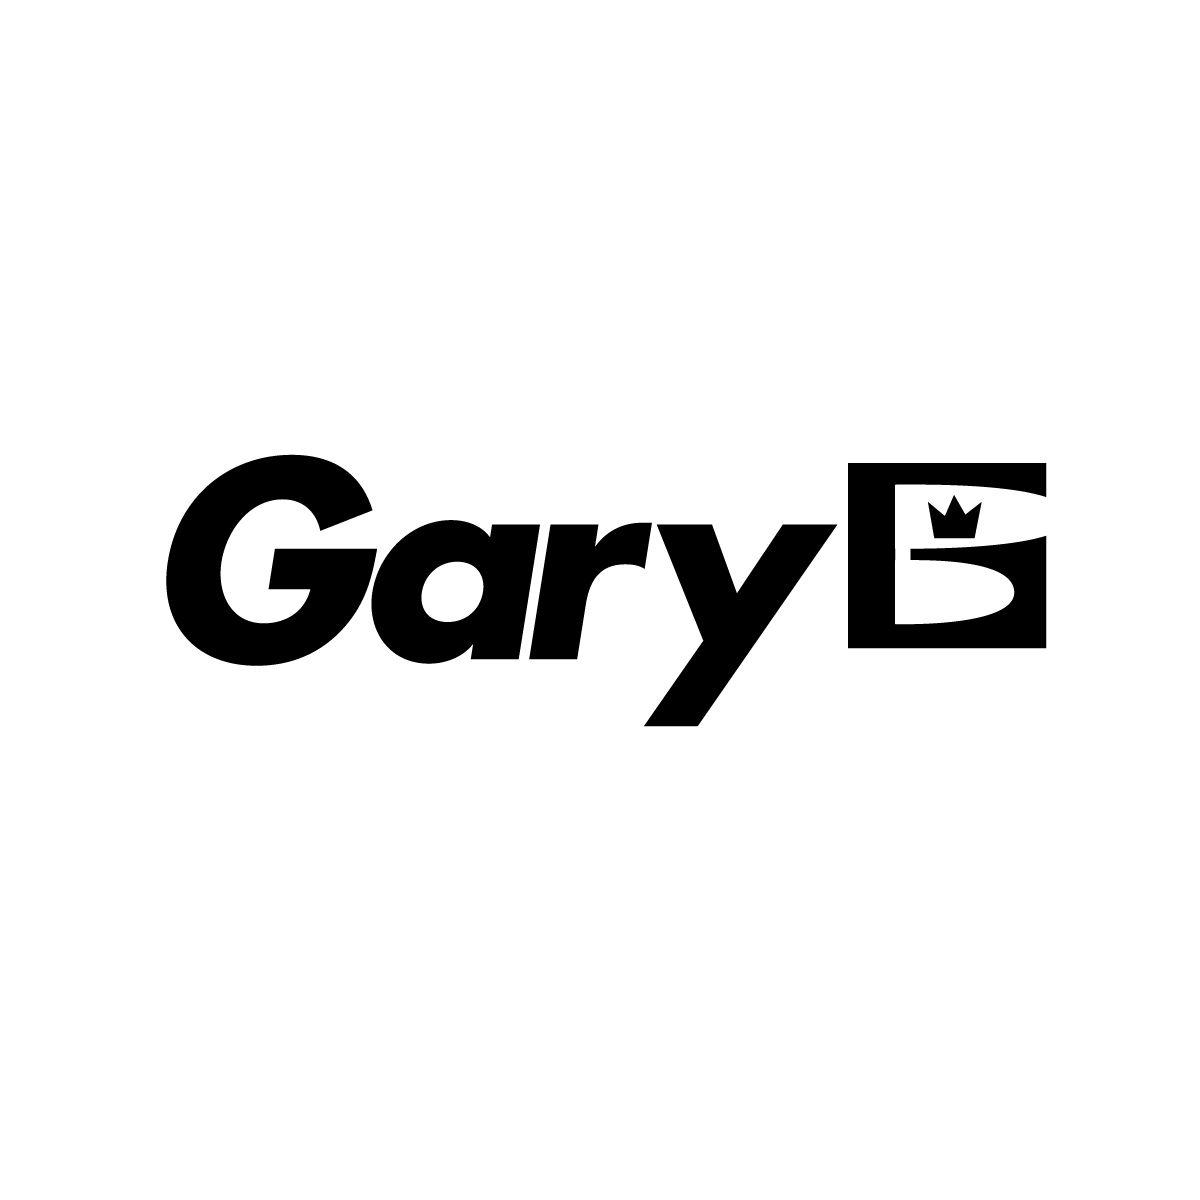 Gary Logo - Gary Logo | About of logos